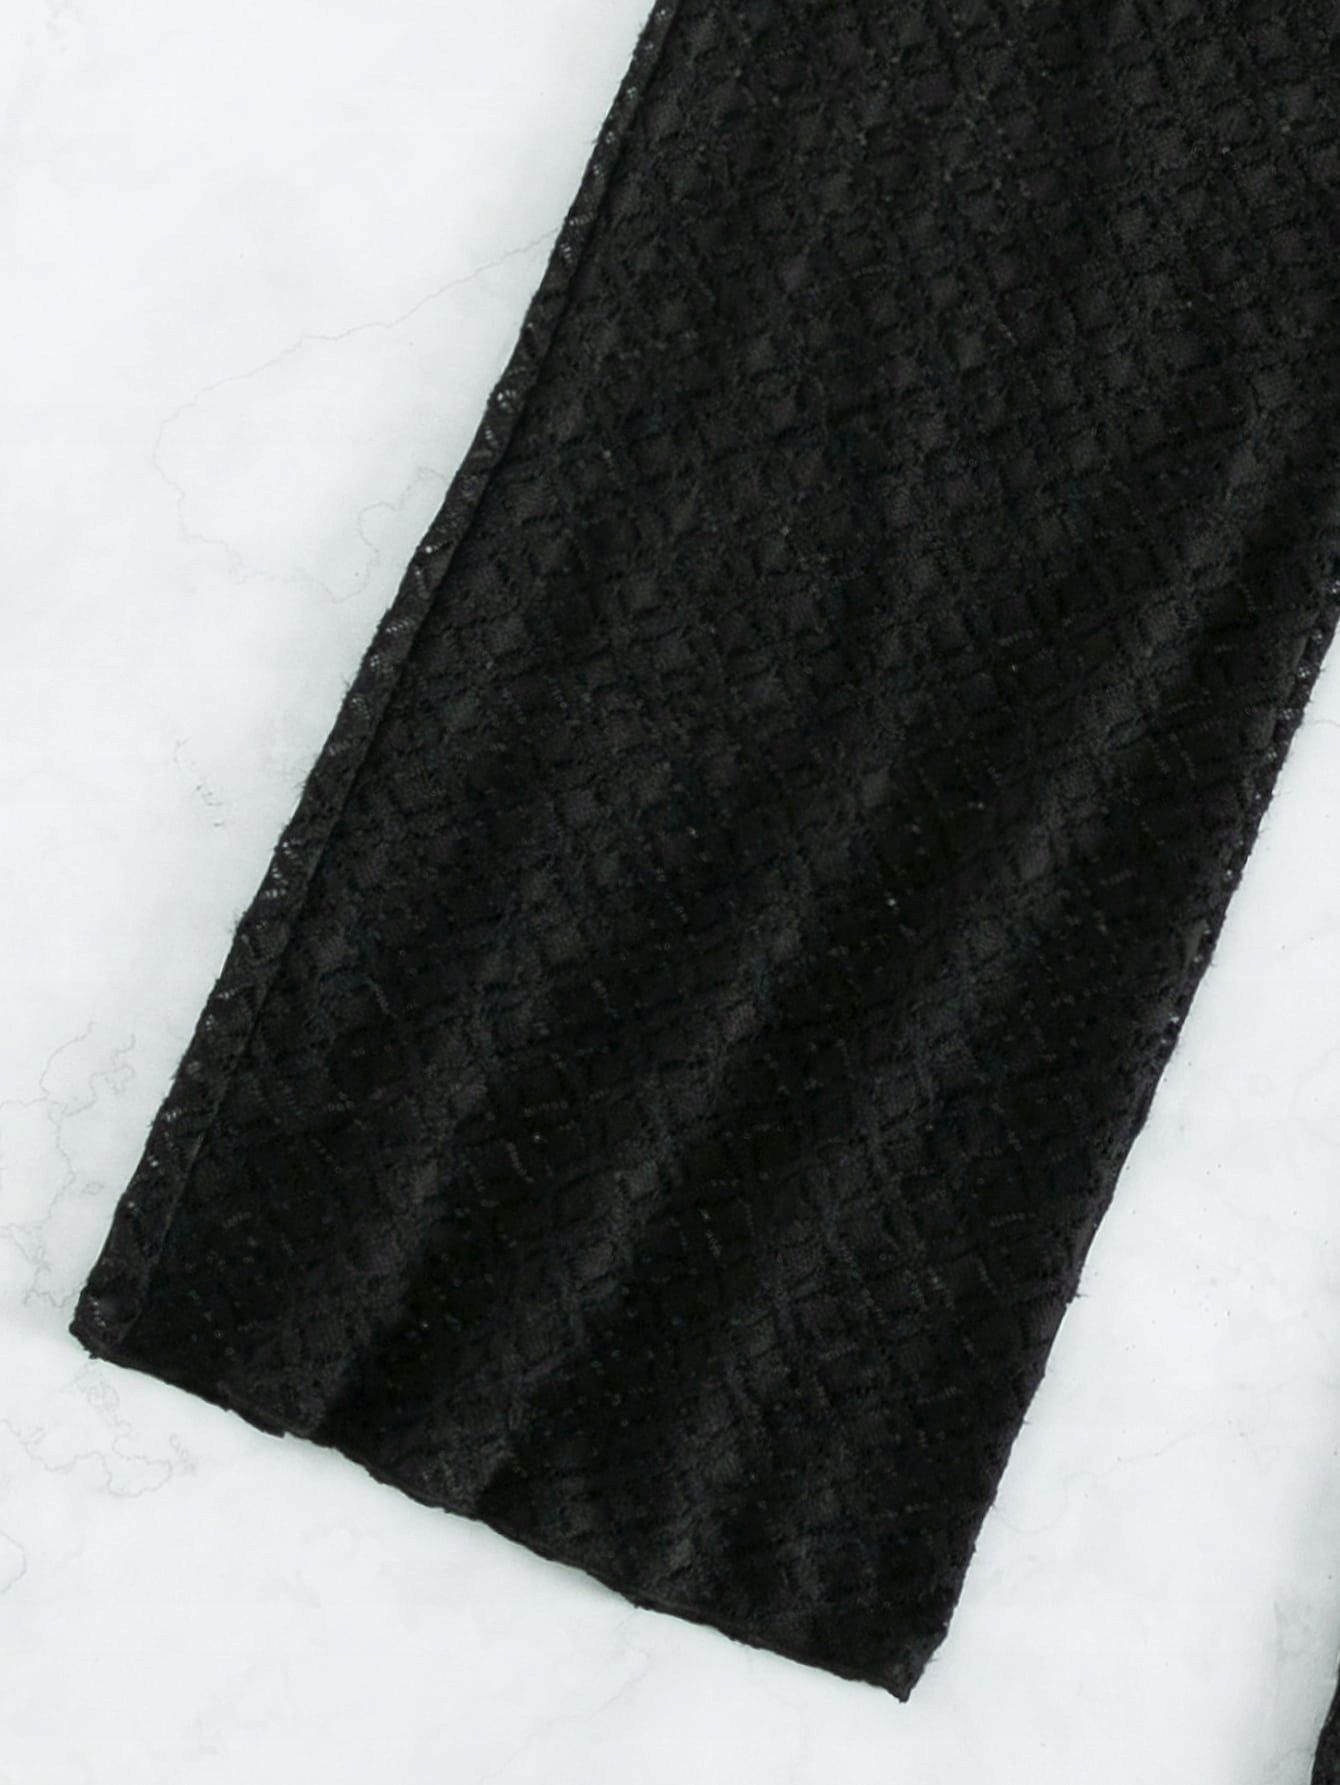 Spodnie Sexy Narzutka Ażurowe Czarne Casual Shein Xl 42